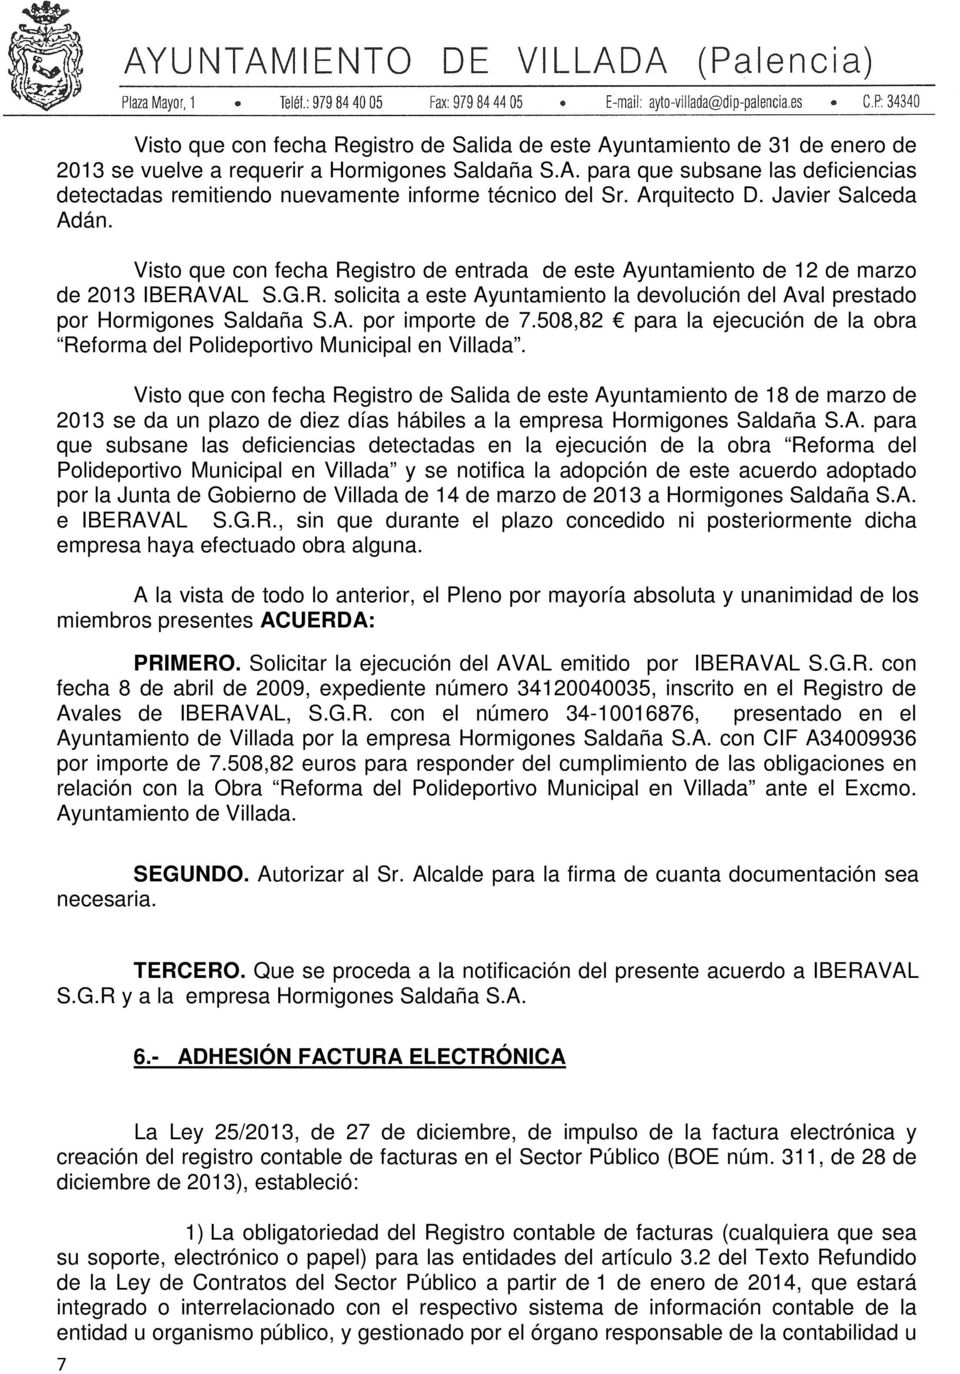 A. por importe de 7.508,82 para la ejecución de la obra Reforma del Polideportivo Municipal en Villada.